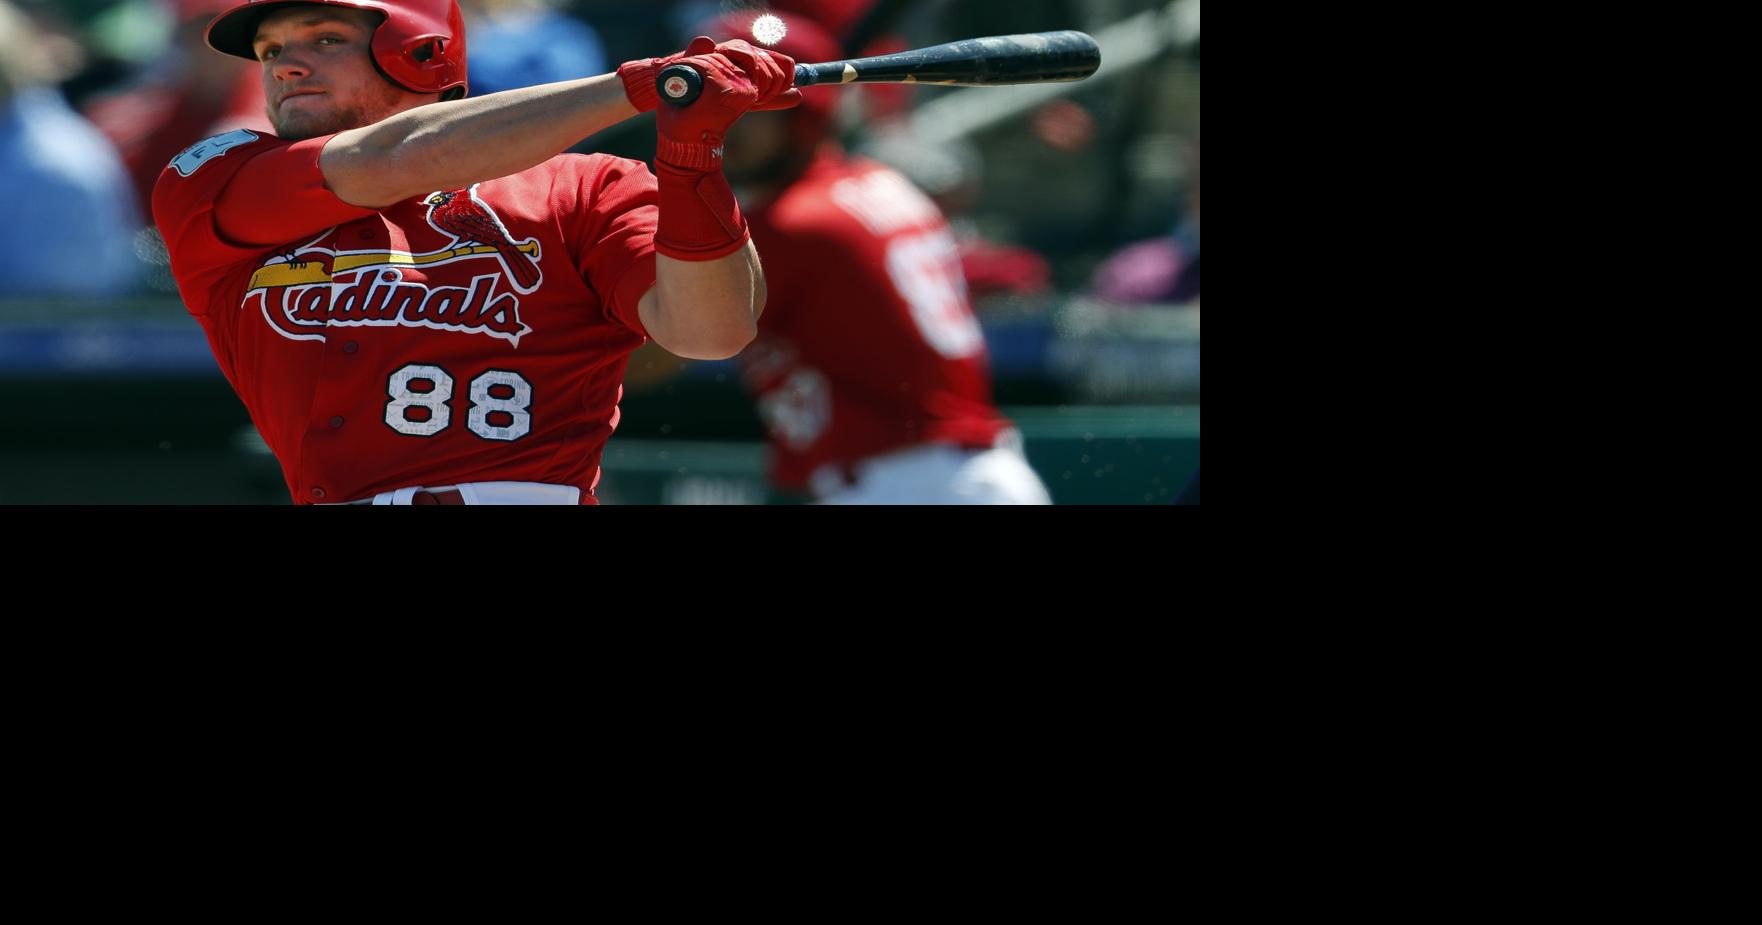 MLB roundup: Brewers' Kolten Wong swats 3 HRs vs. Reds